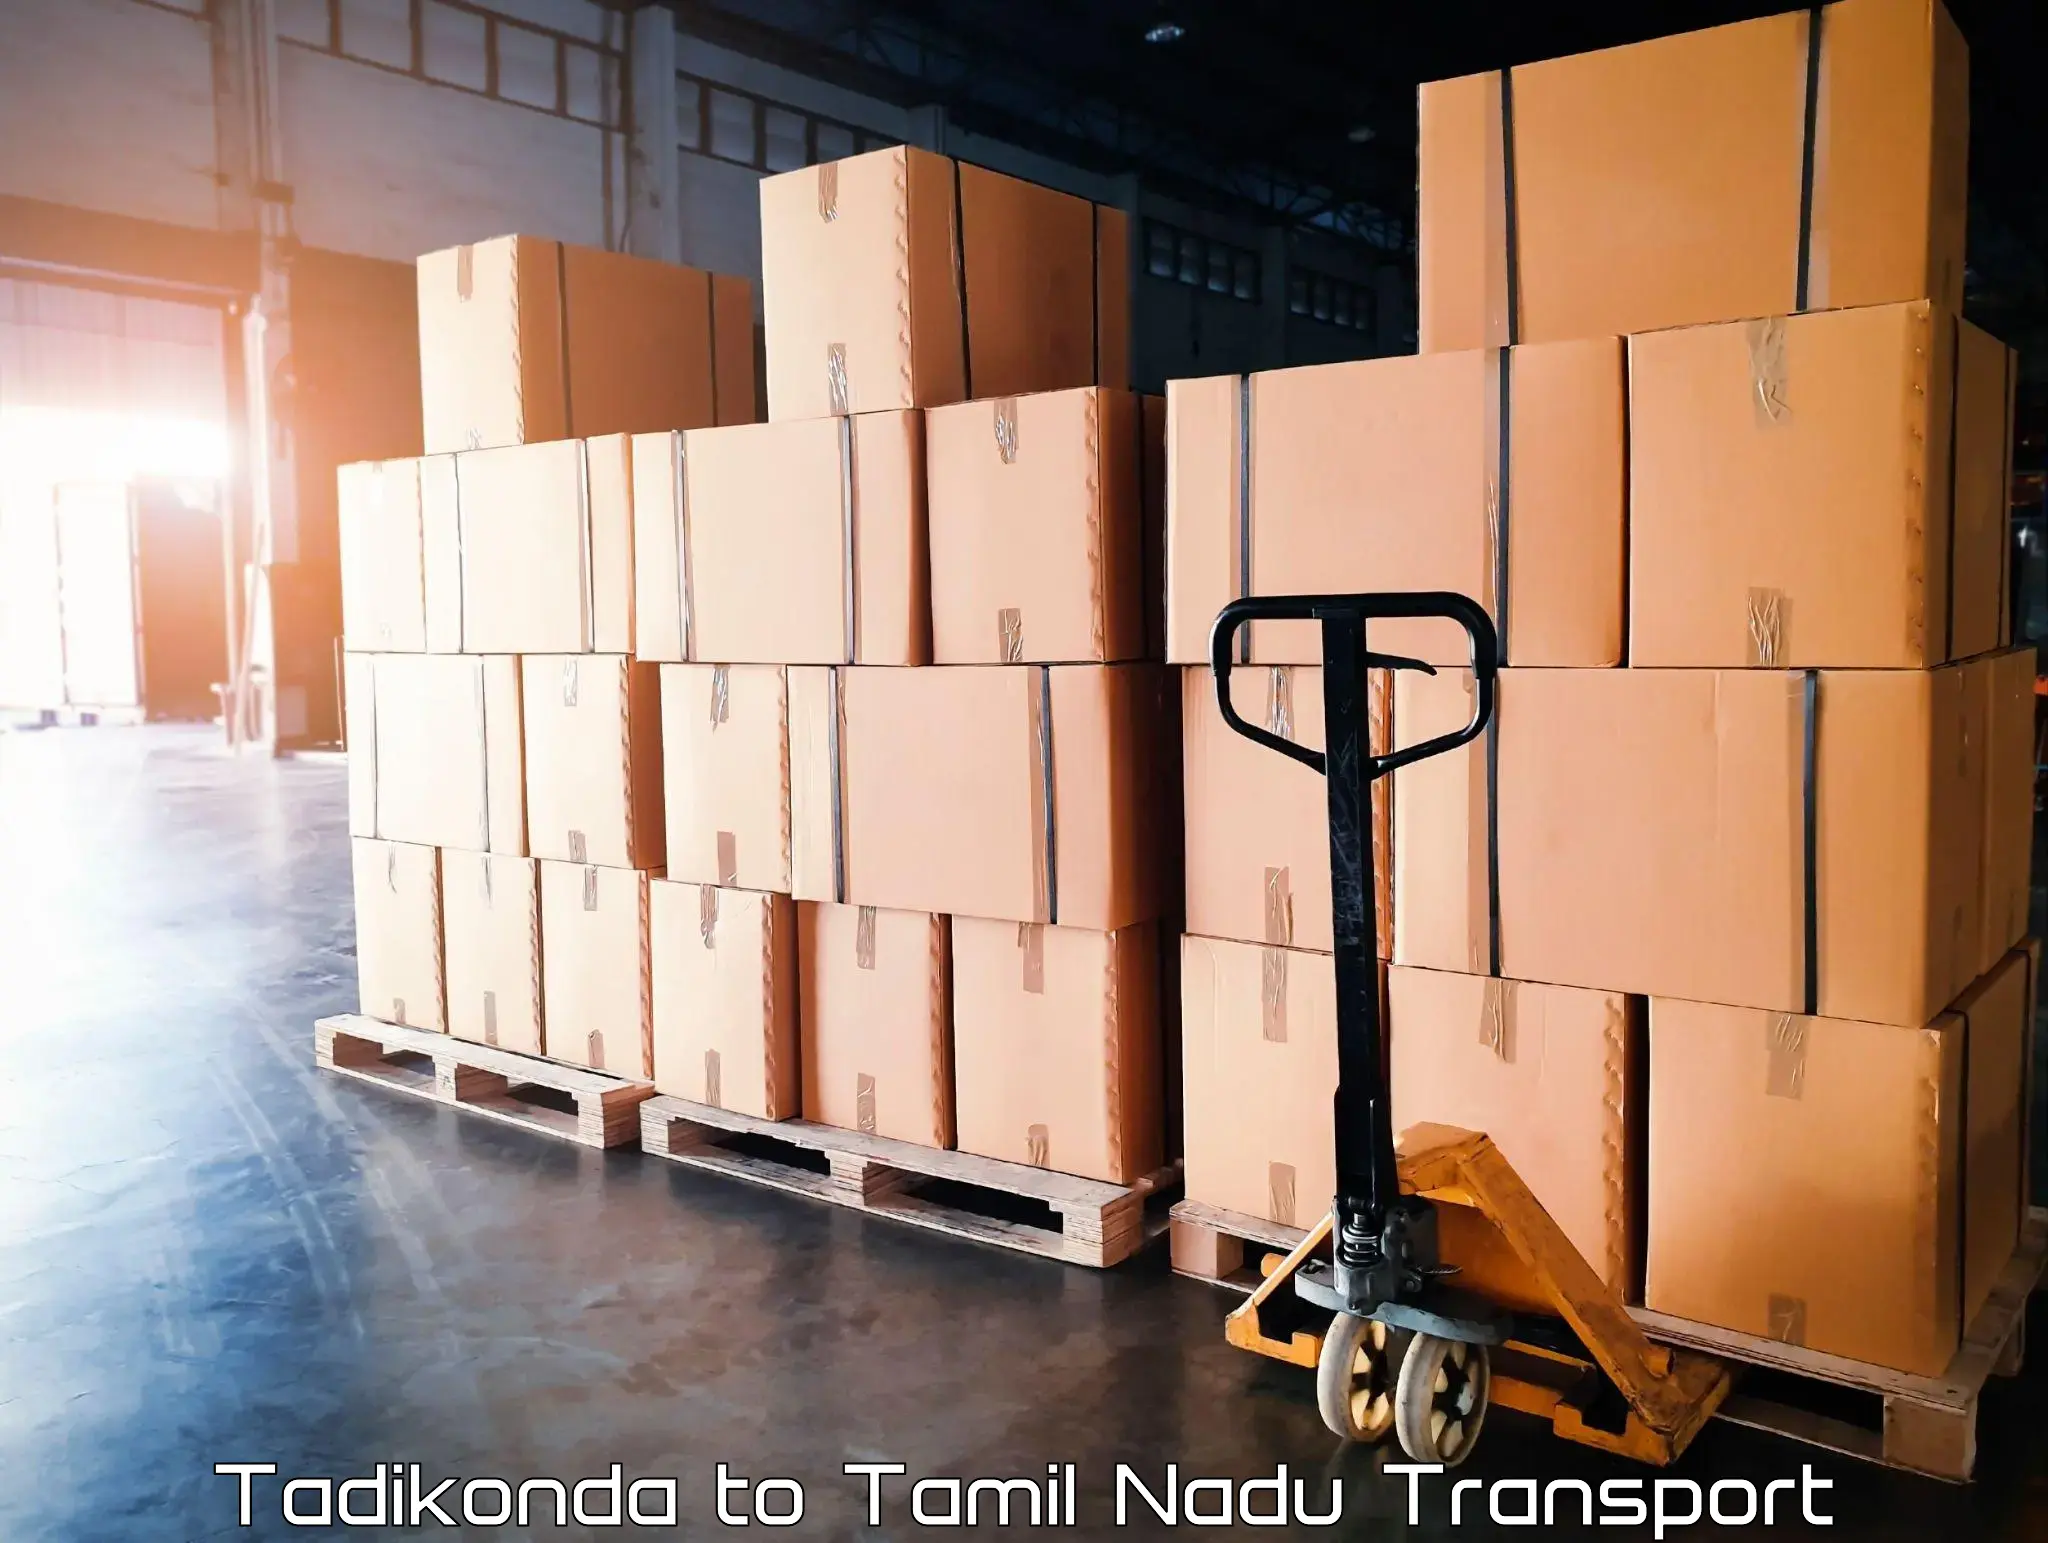 Daily transport service Tadikonda to Tiruvannamalai